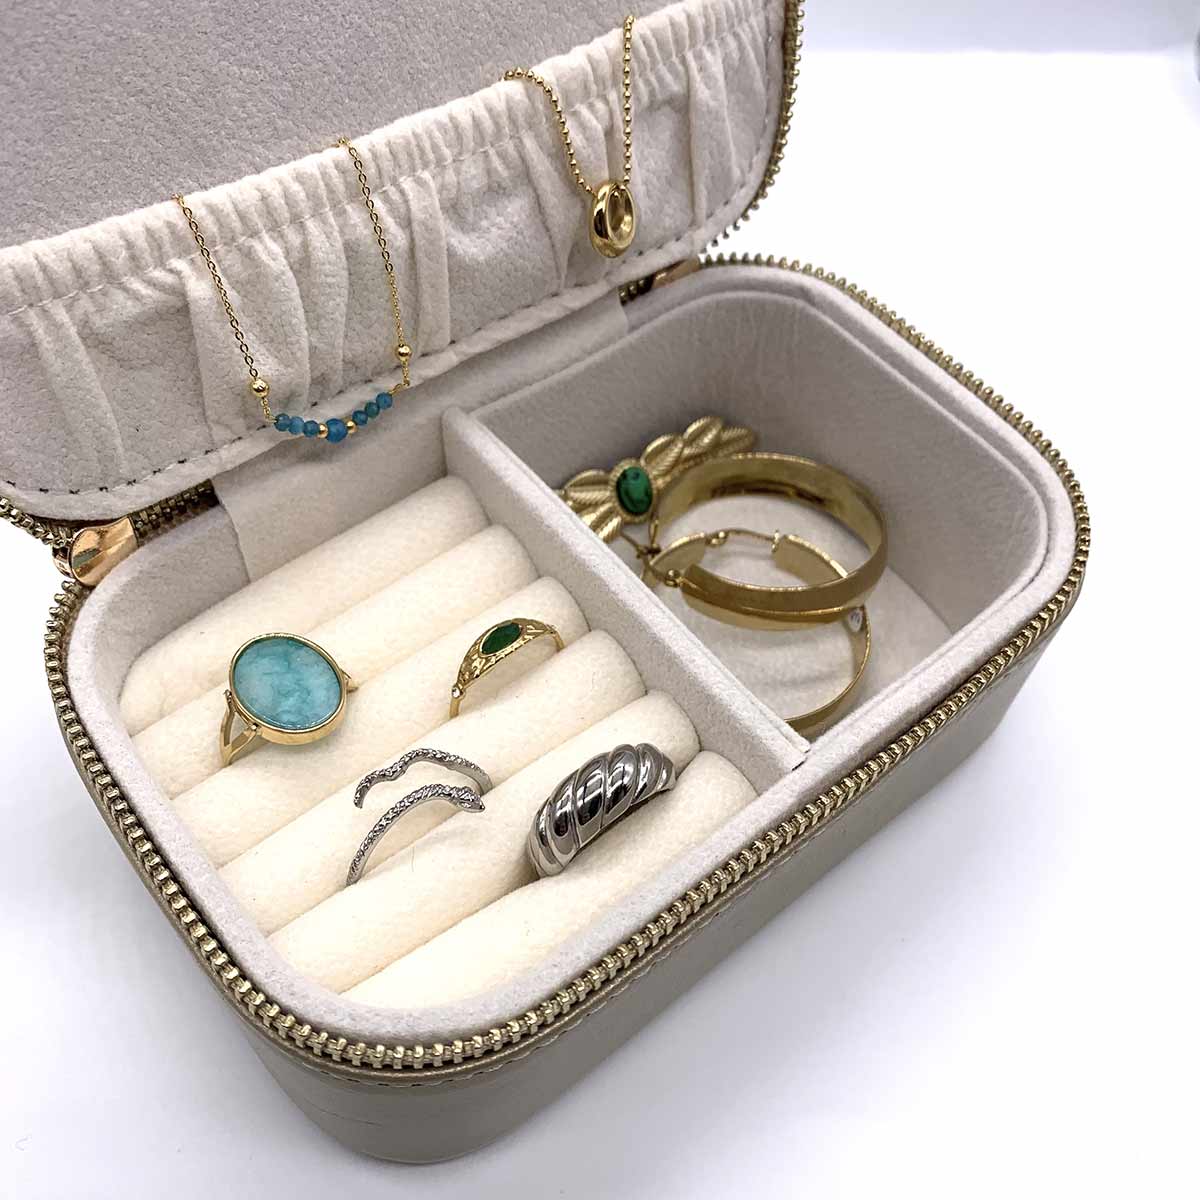 rangement bijoux de voyage - boite à bijoux en cuir doré po&me. Boutique bijoux en ligne